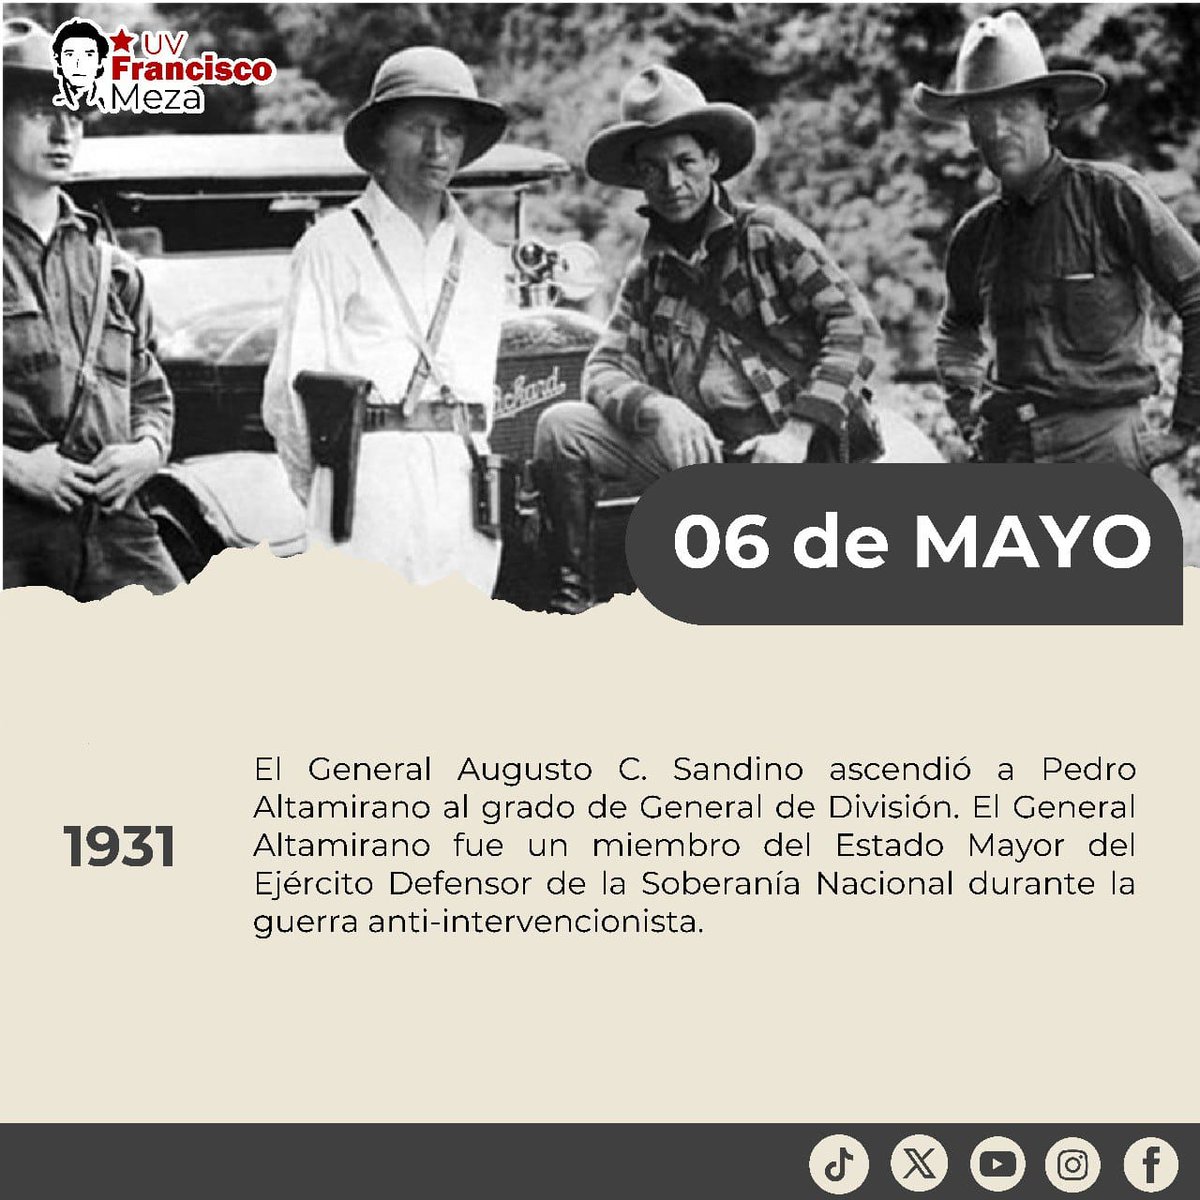 #Nicaragua Efemérides de la Revolución Popular Sandinista. #4519LaPatriaLaRevolución #SomosUNAN ✌️🇳🇮